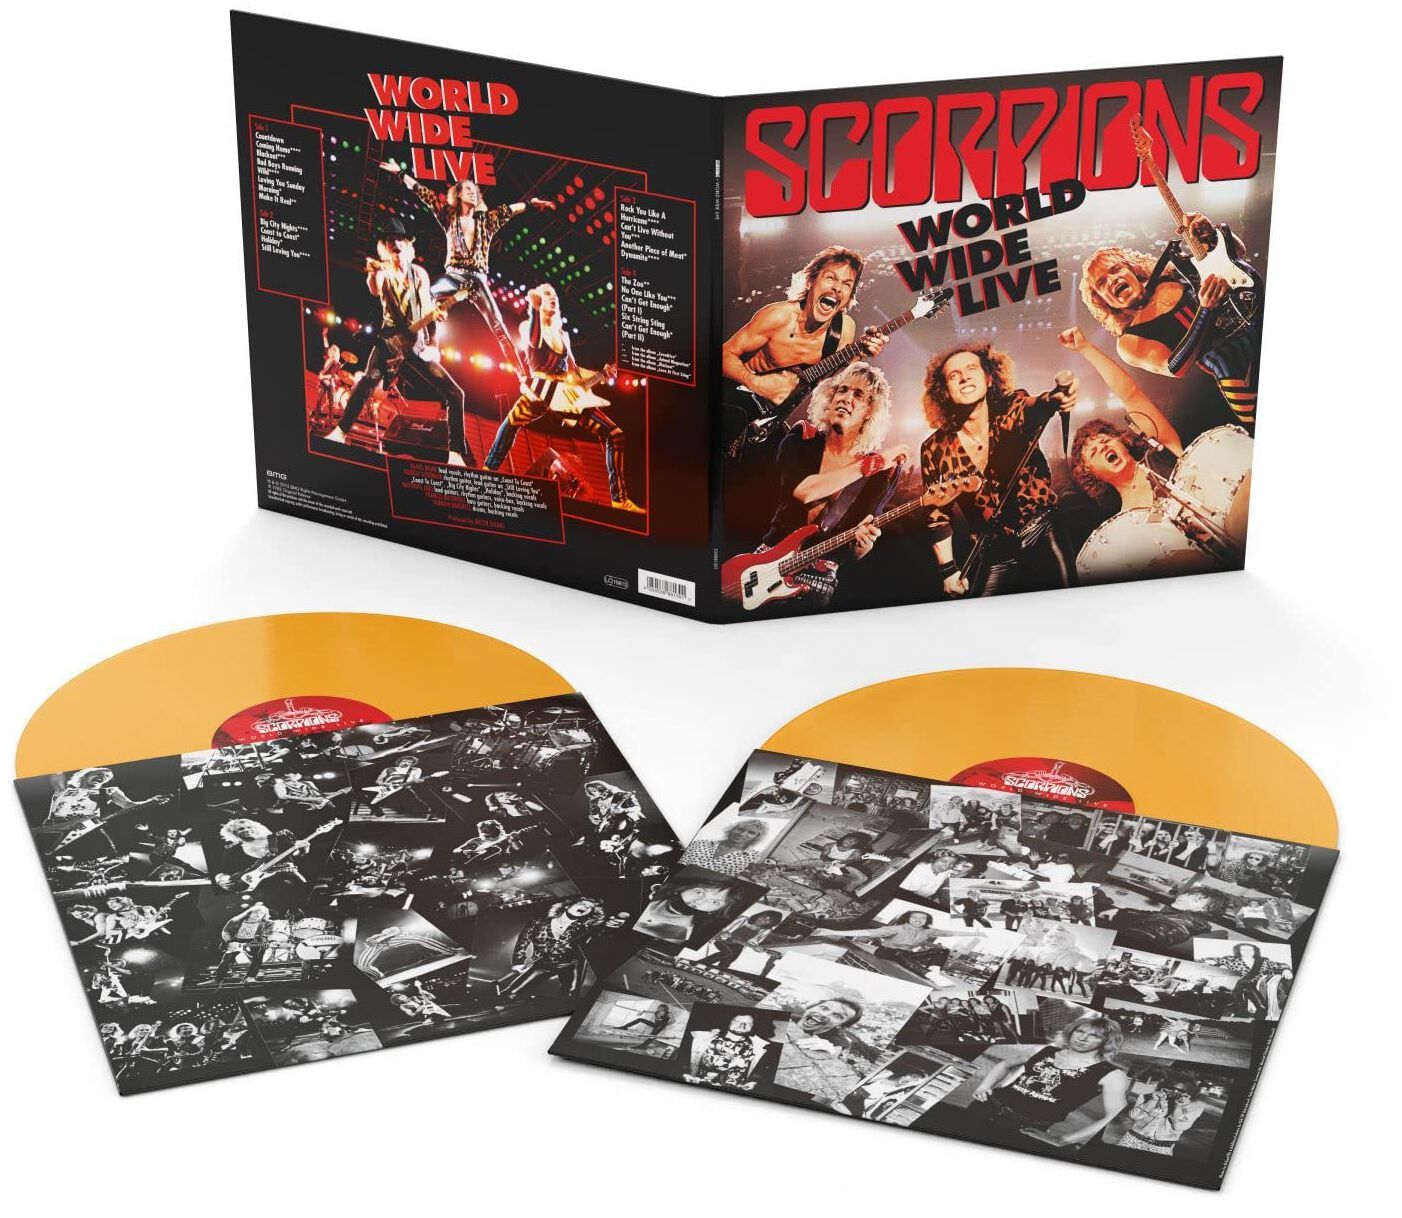 Scorpions World wide live LP multicolor von Scorpions